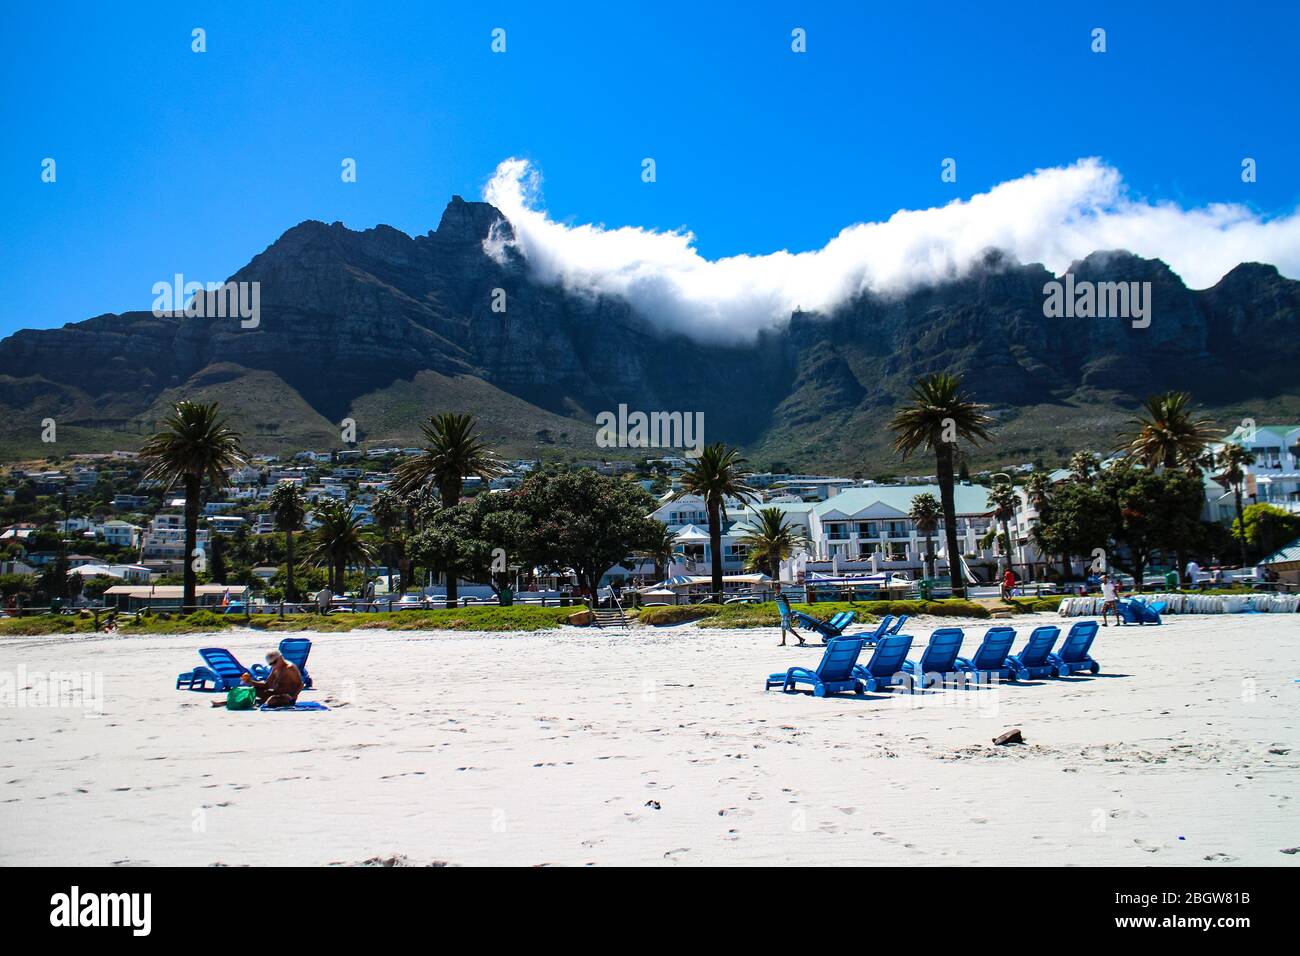 La vita sulla spiaggia di Camp con la catena montuosa del Table Mountain National Park sullo sfondo, Città del Capo, Capo Occidentale, Sud Africa. Foto Stock